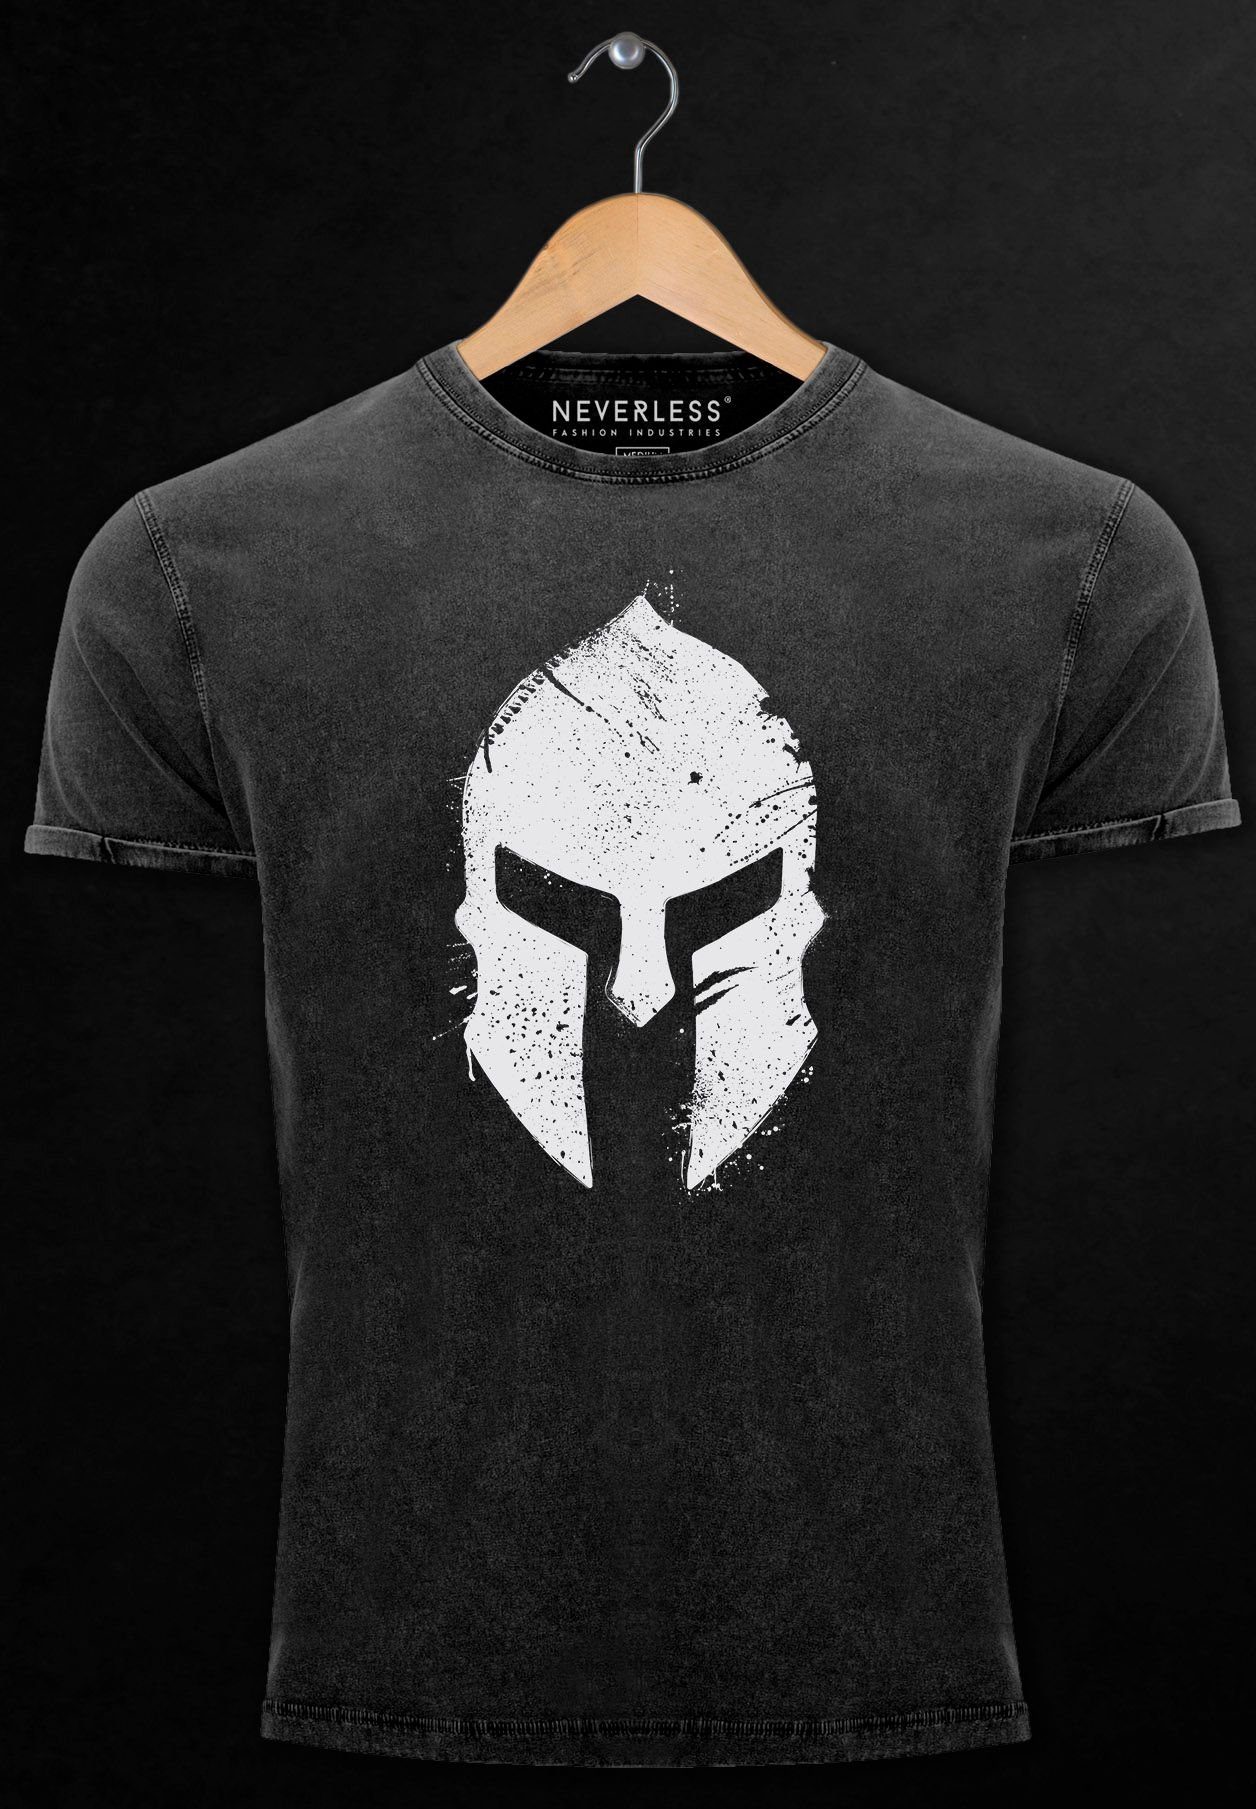 Neverless Print-Shirt Herren Sparta-Helm Vintage Print mit Warr -weiss schwarz Shirt Krieger Print Gladiator Aufdruck